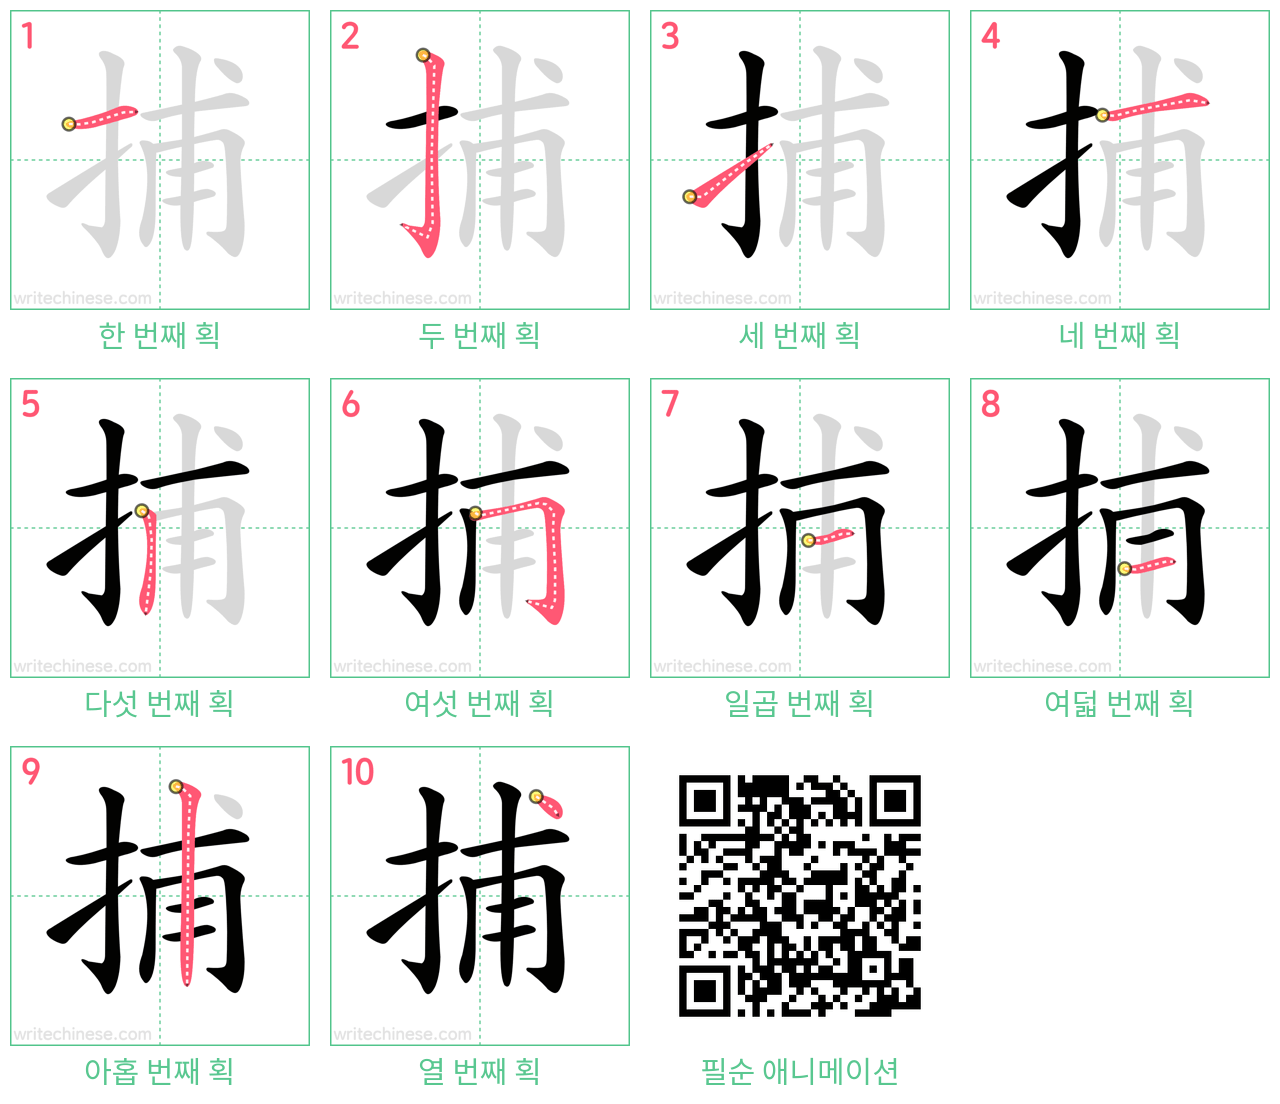 捕 step-by-step stroke order diagrams